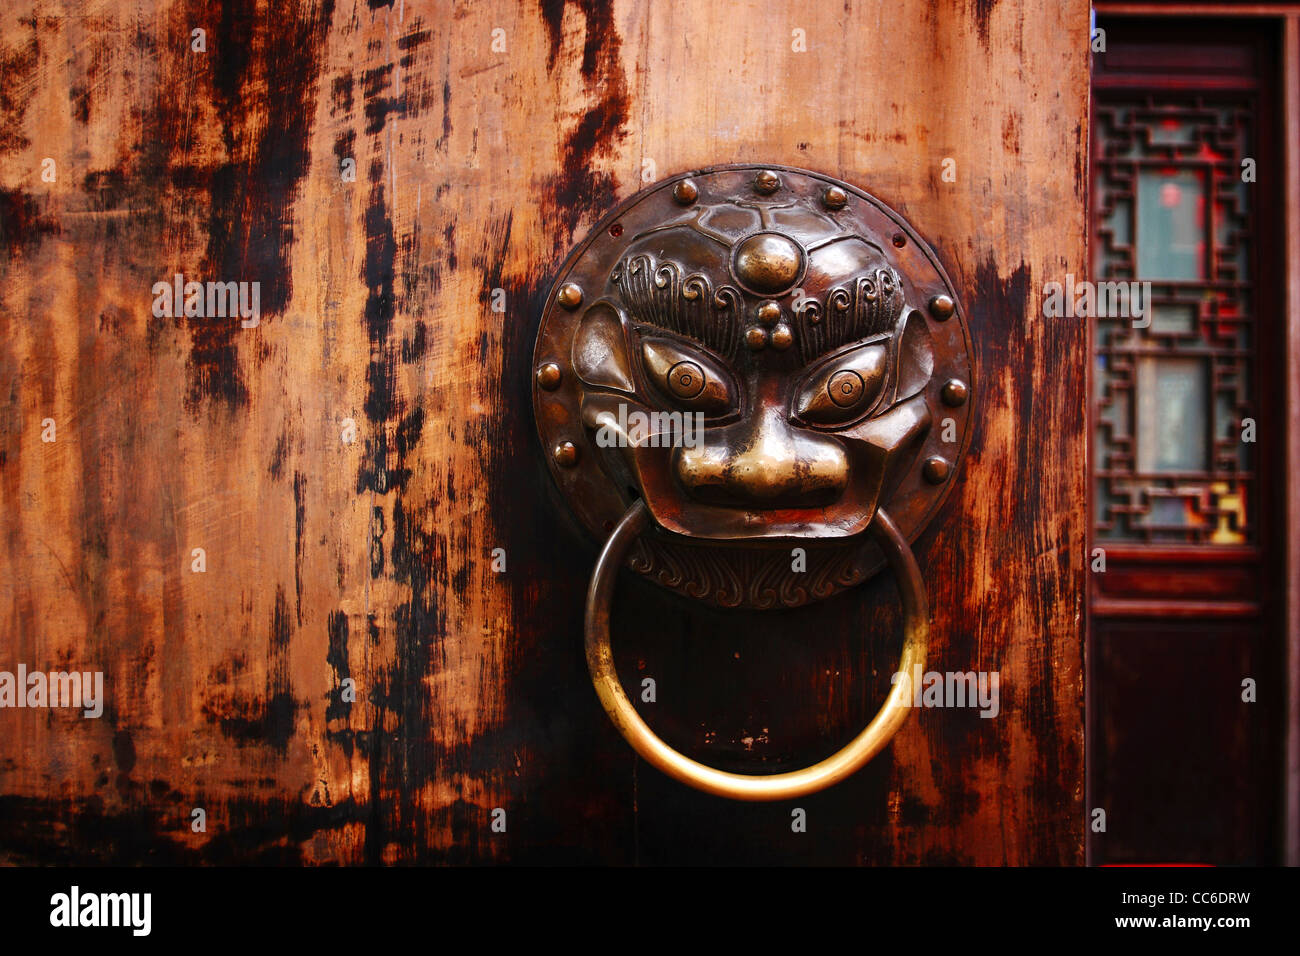 Wooden door with a beast shape knocker, Kuan-zhai Lane, Chengdu, Sichuan , China Stock Photo